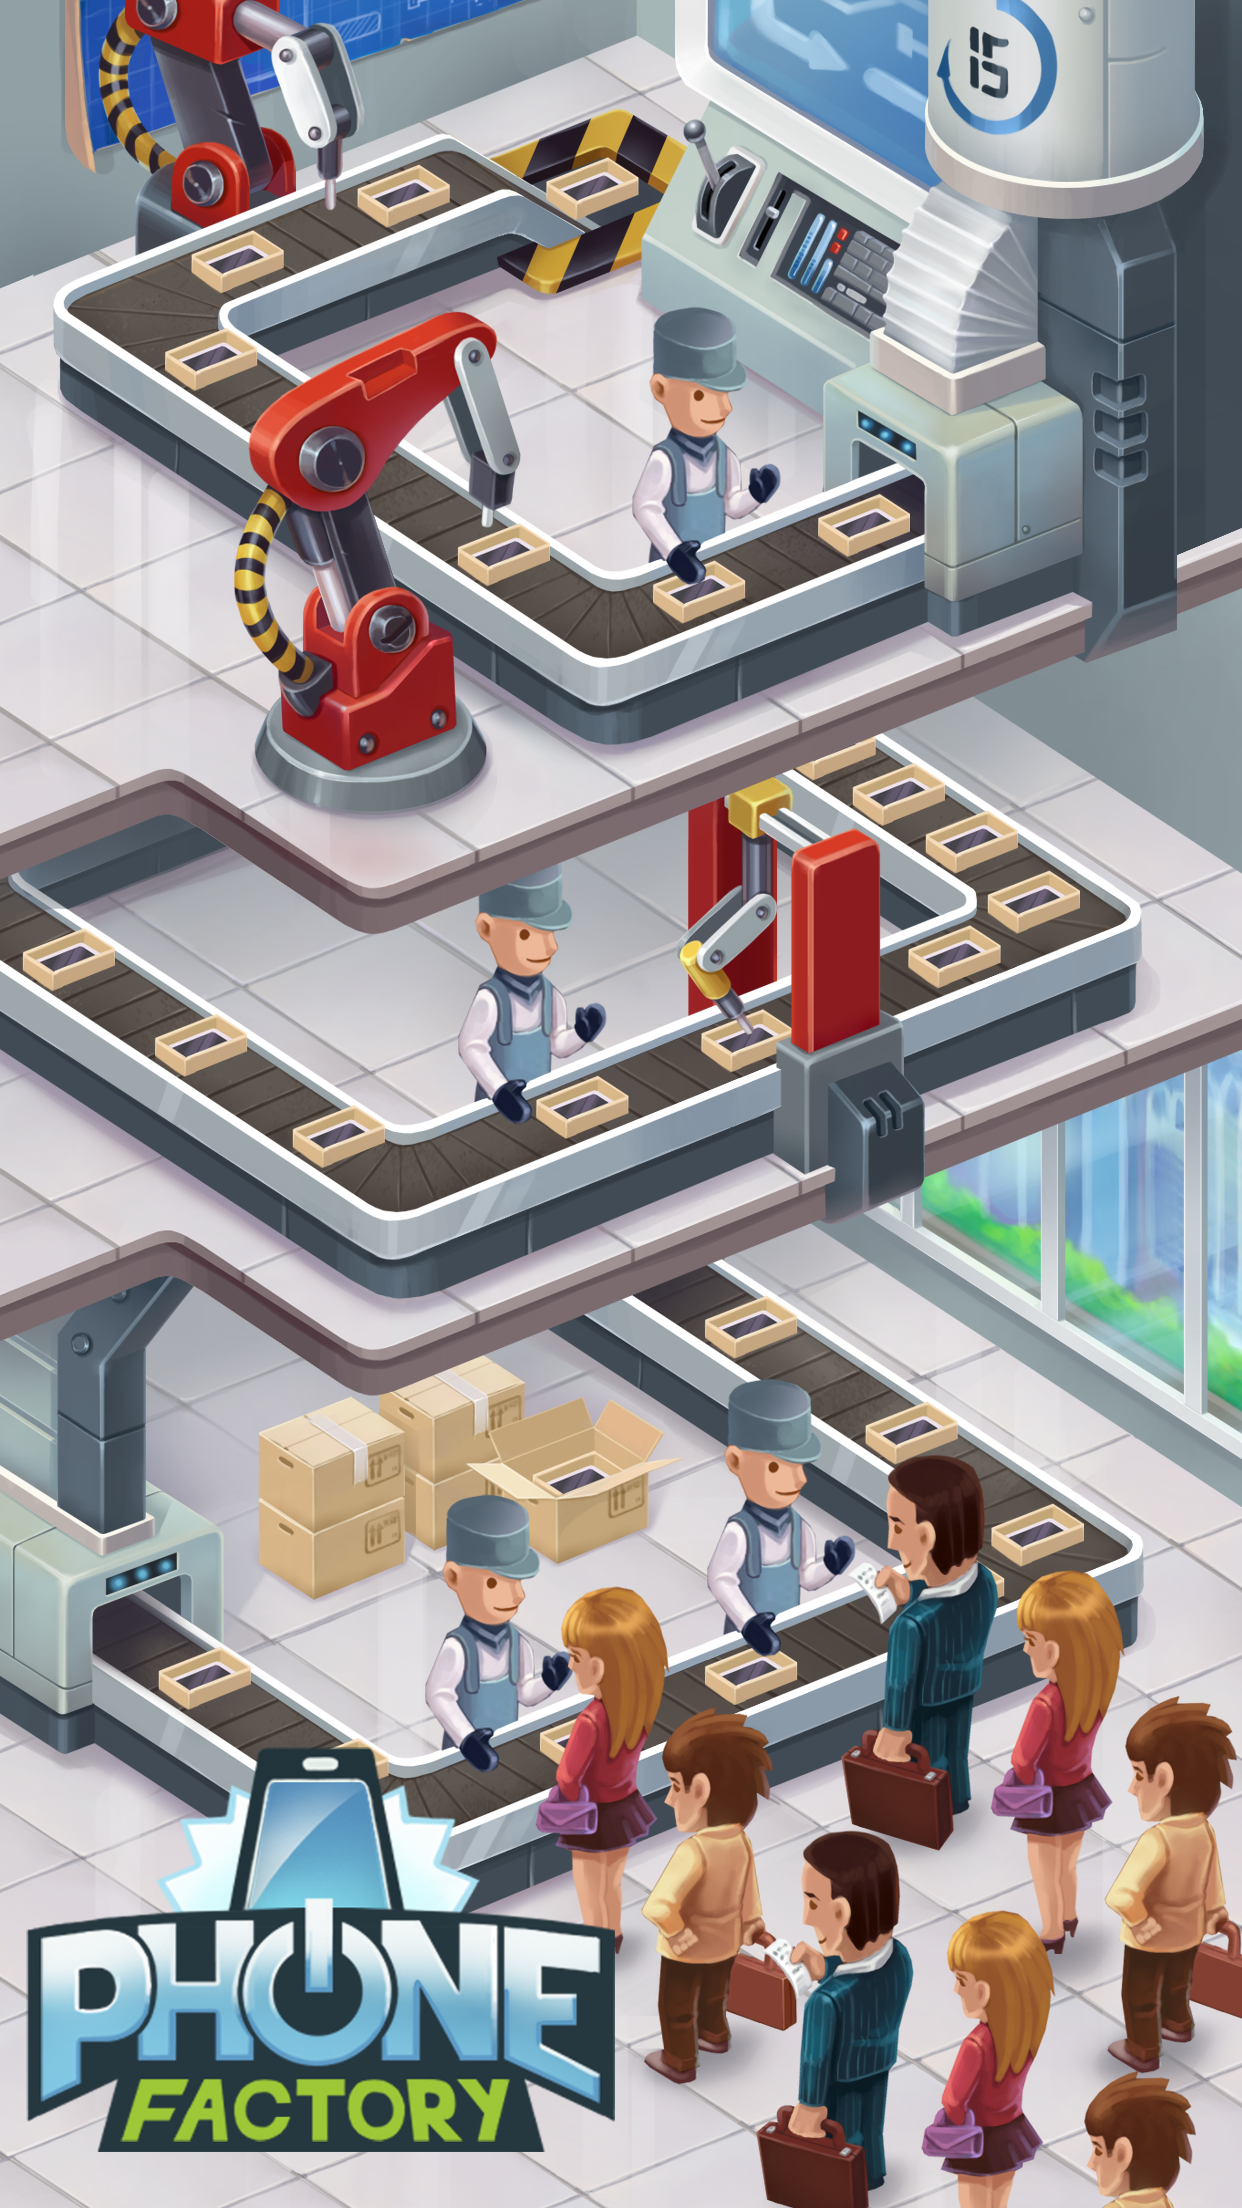 Screenshot 1 of Phone Factory - Spiel zum Herstellen von Smartphones im Leerlauf 0.8